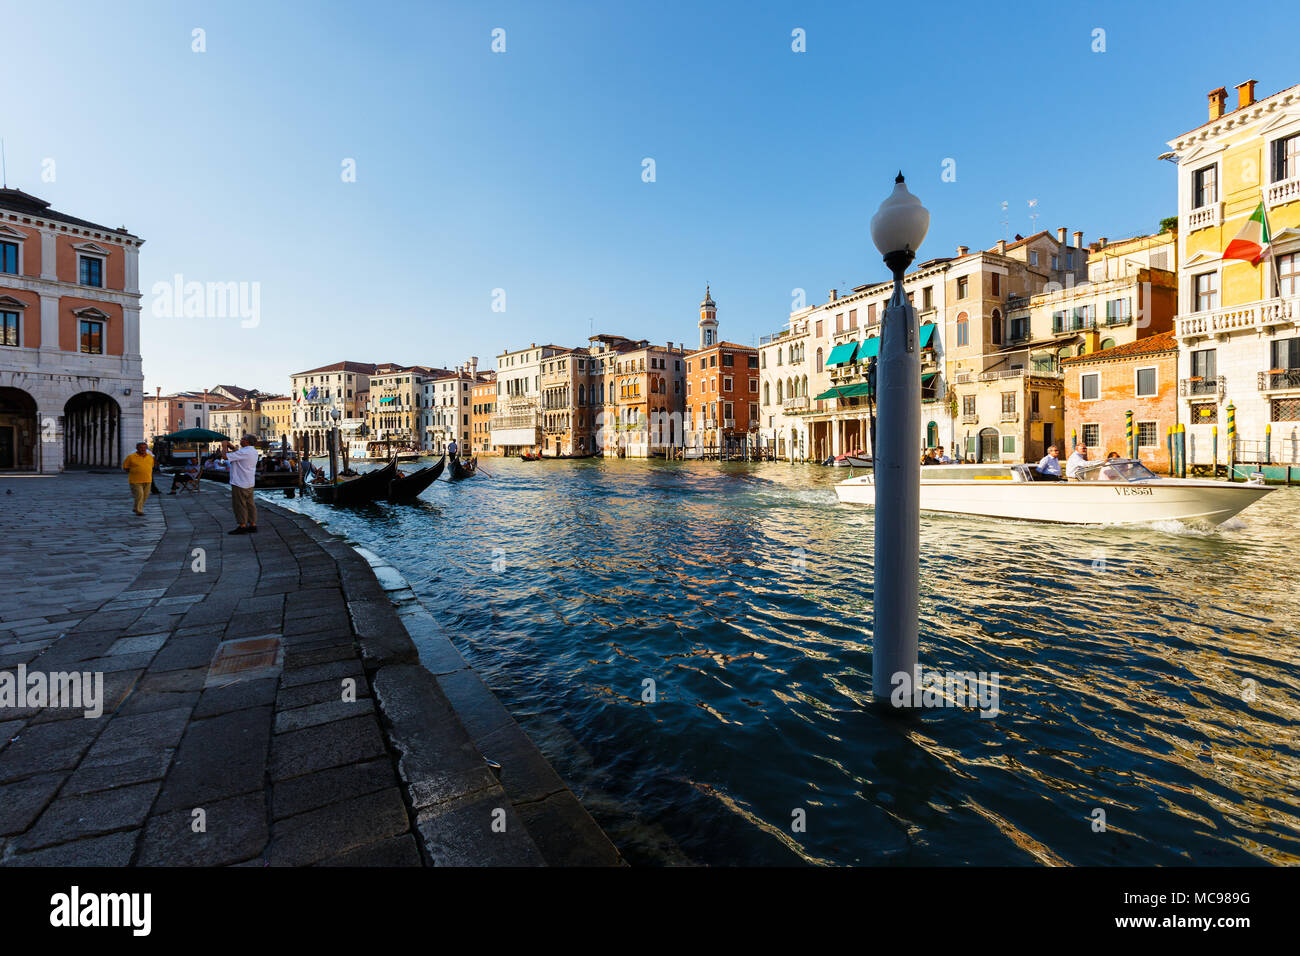 Venise, Italie - juin, 21, 2013 : vue typique de la ville de Venise, le Grand canal, beaucoup de touristes jouissent d'un repos sur les gondoles et les bateaux de plaisance. Campanil Banque D'Images